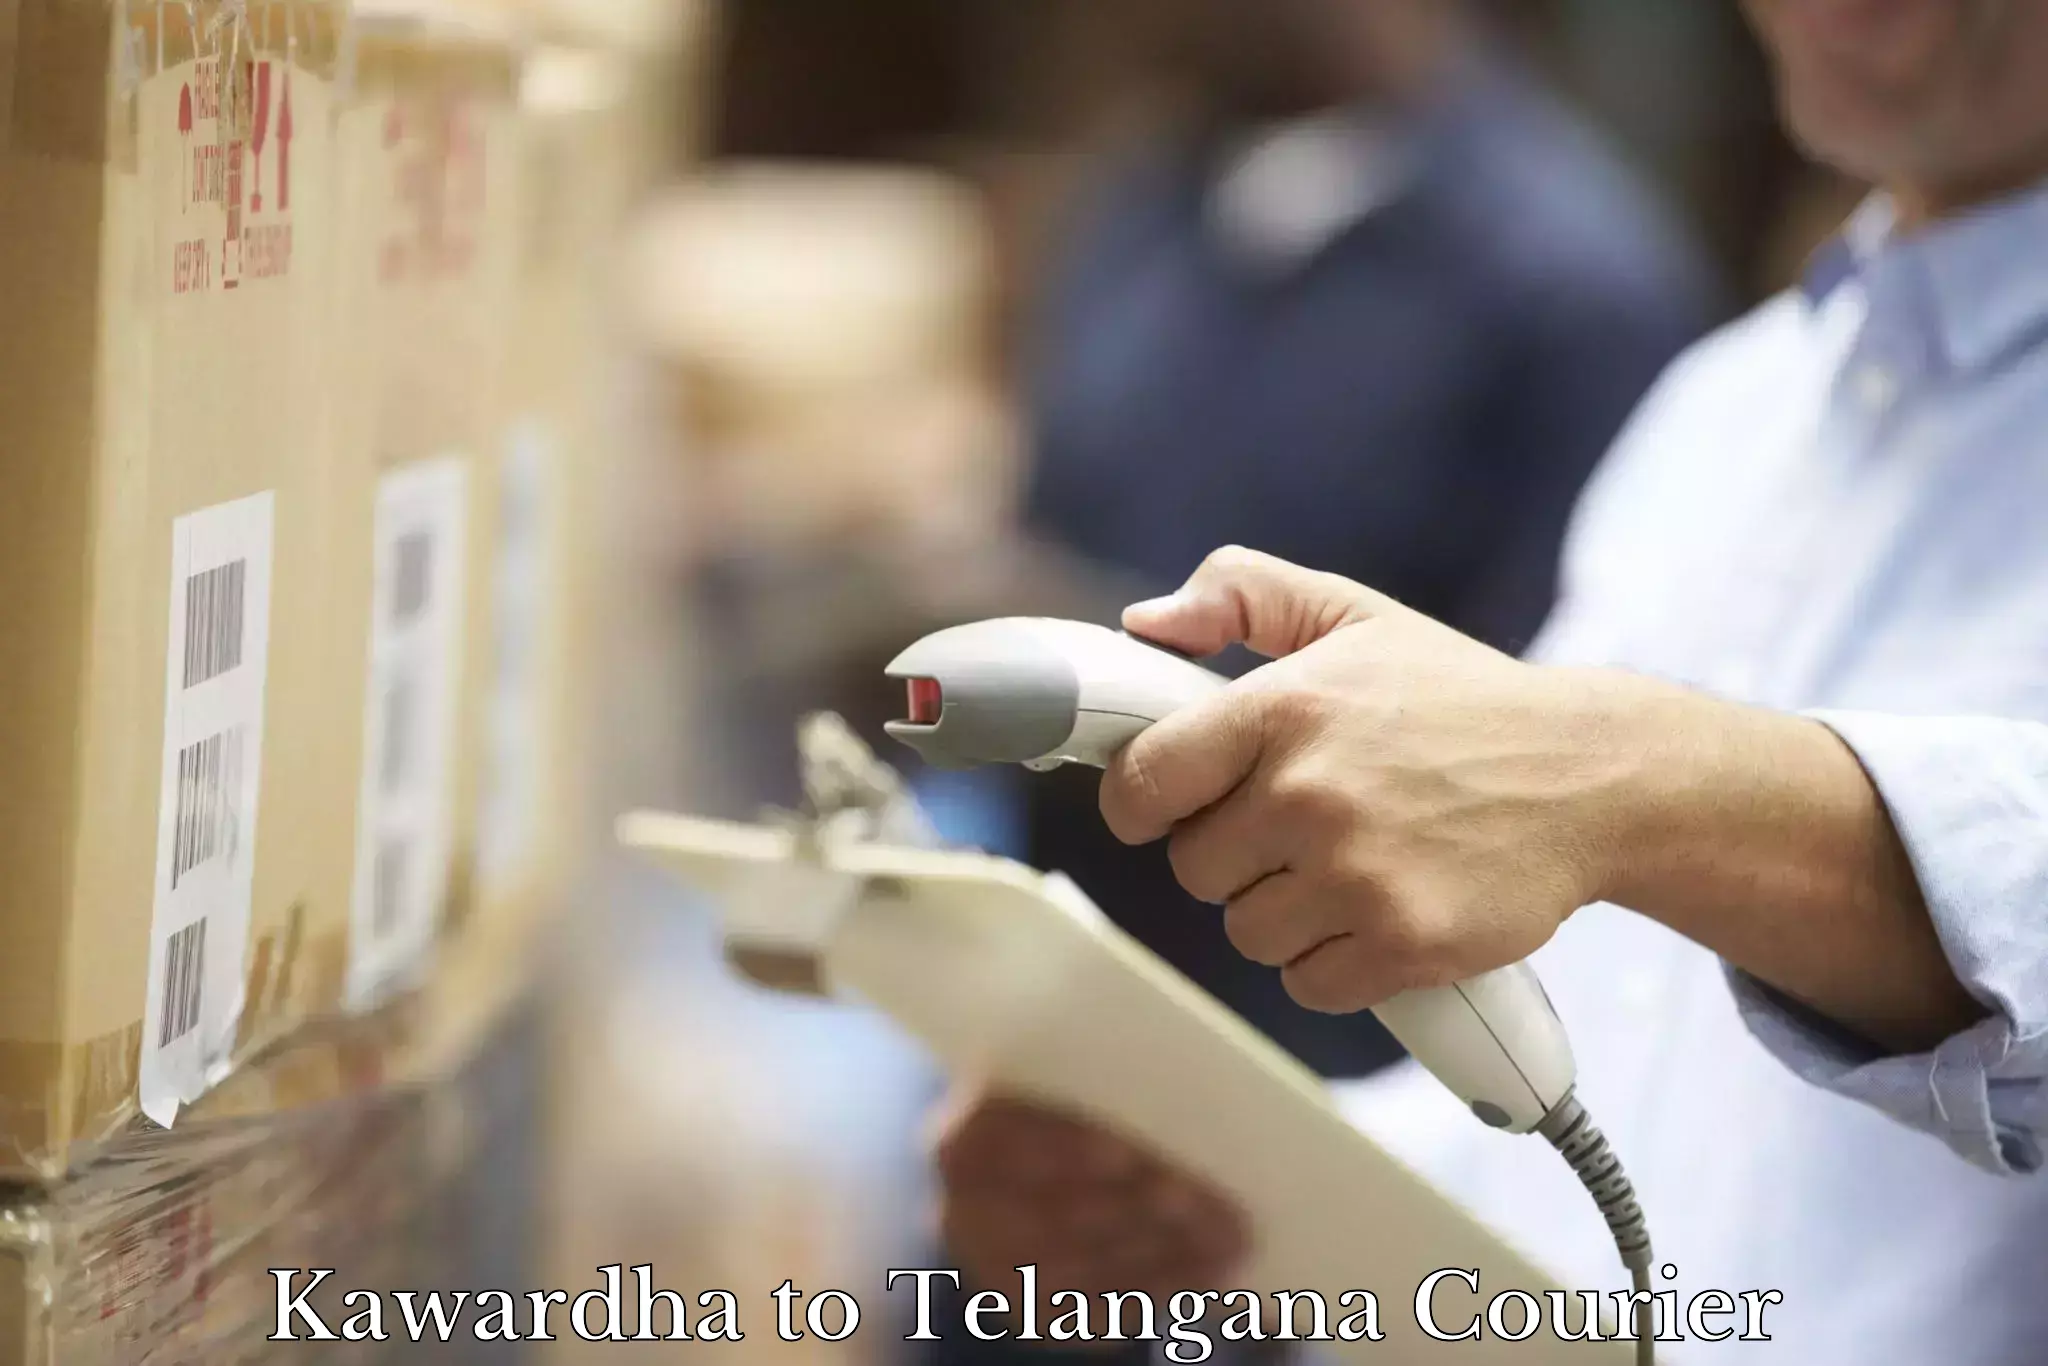 Nationwide shipping capabilities Kawardha to Pathipaka